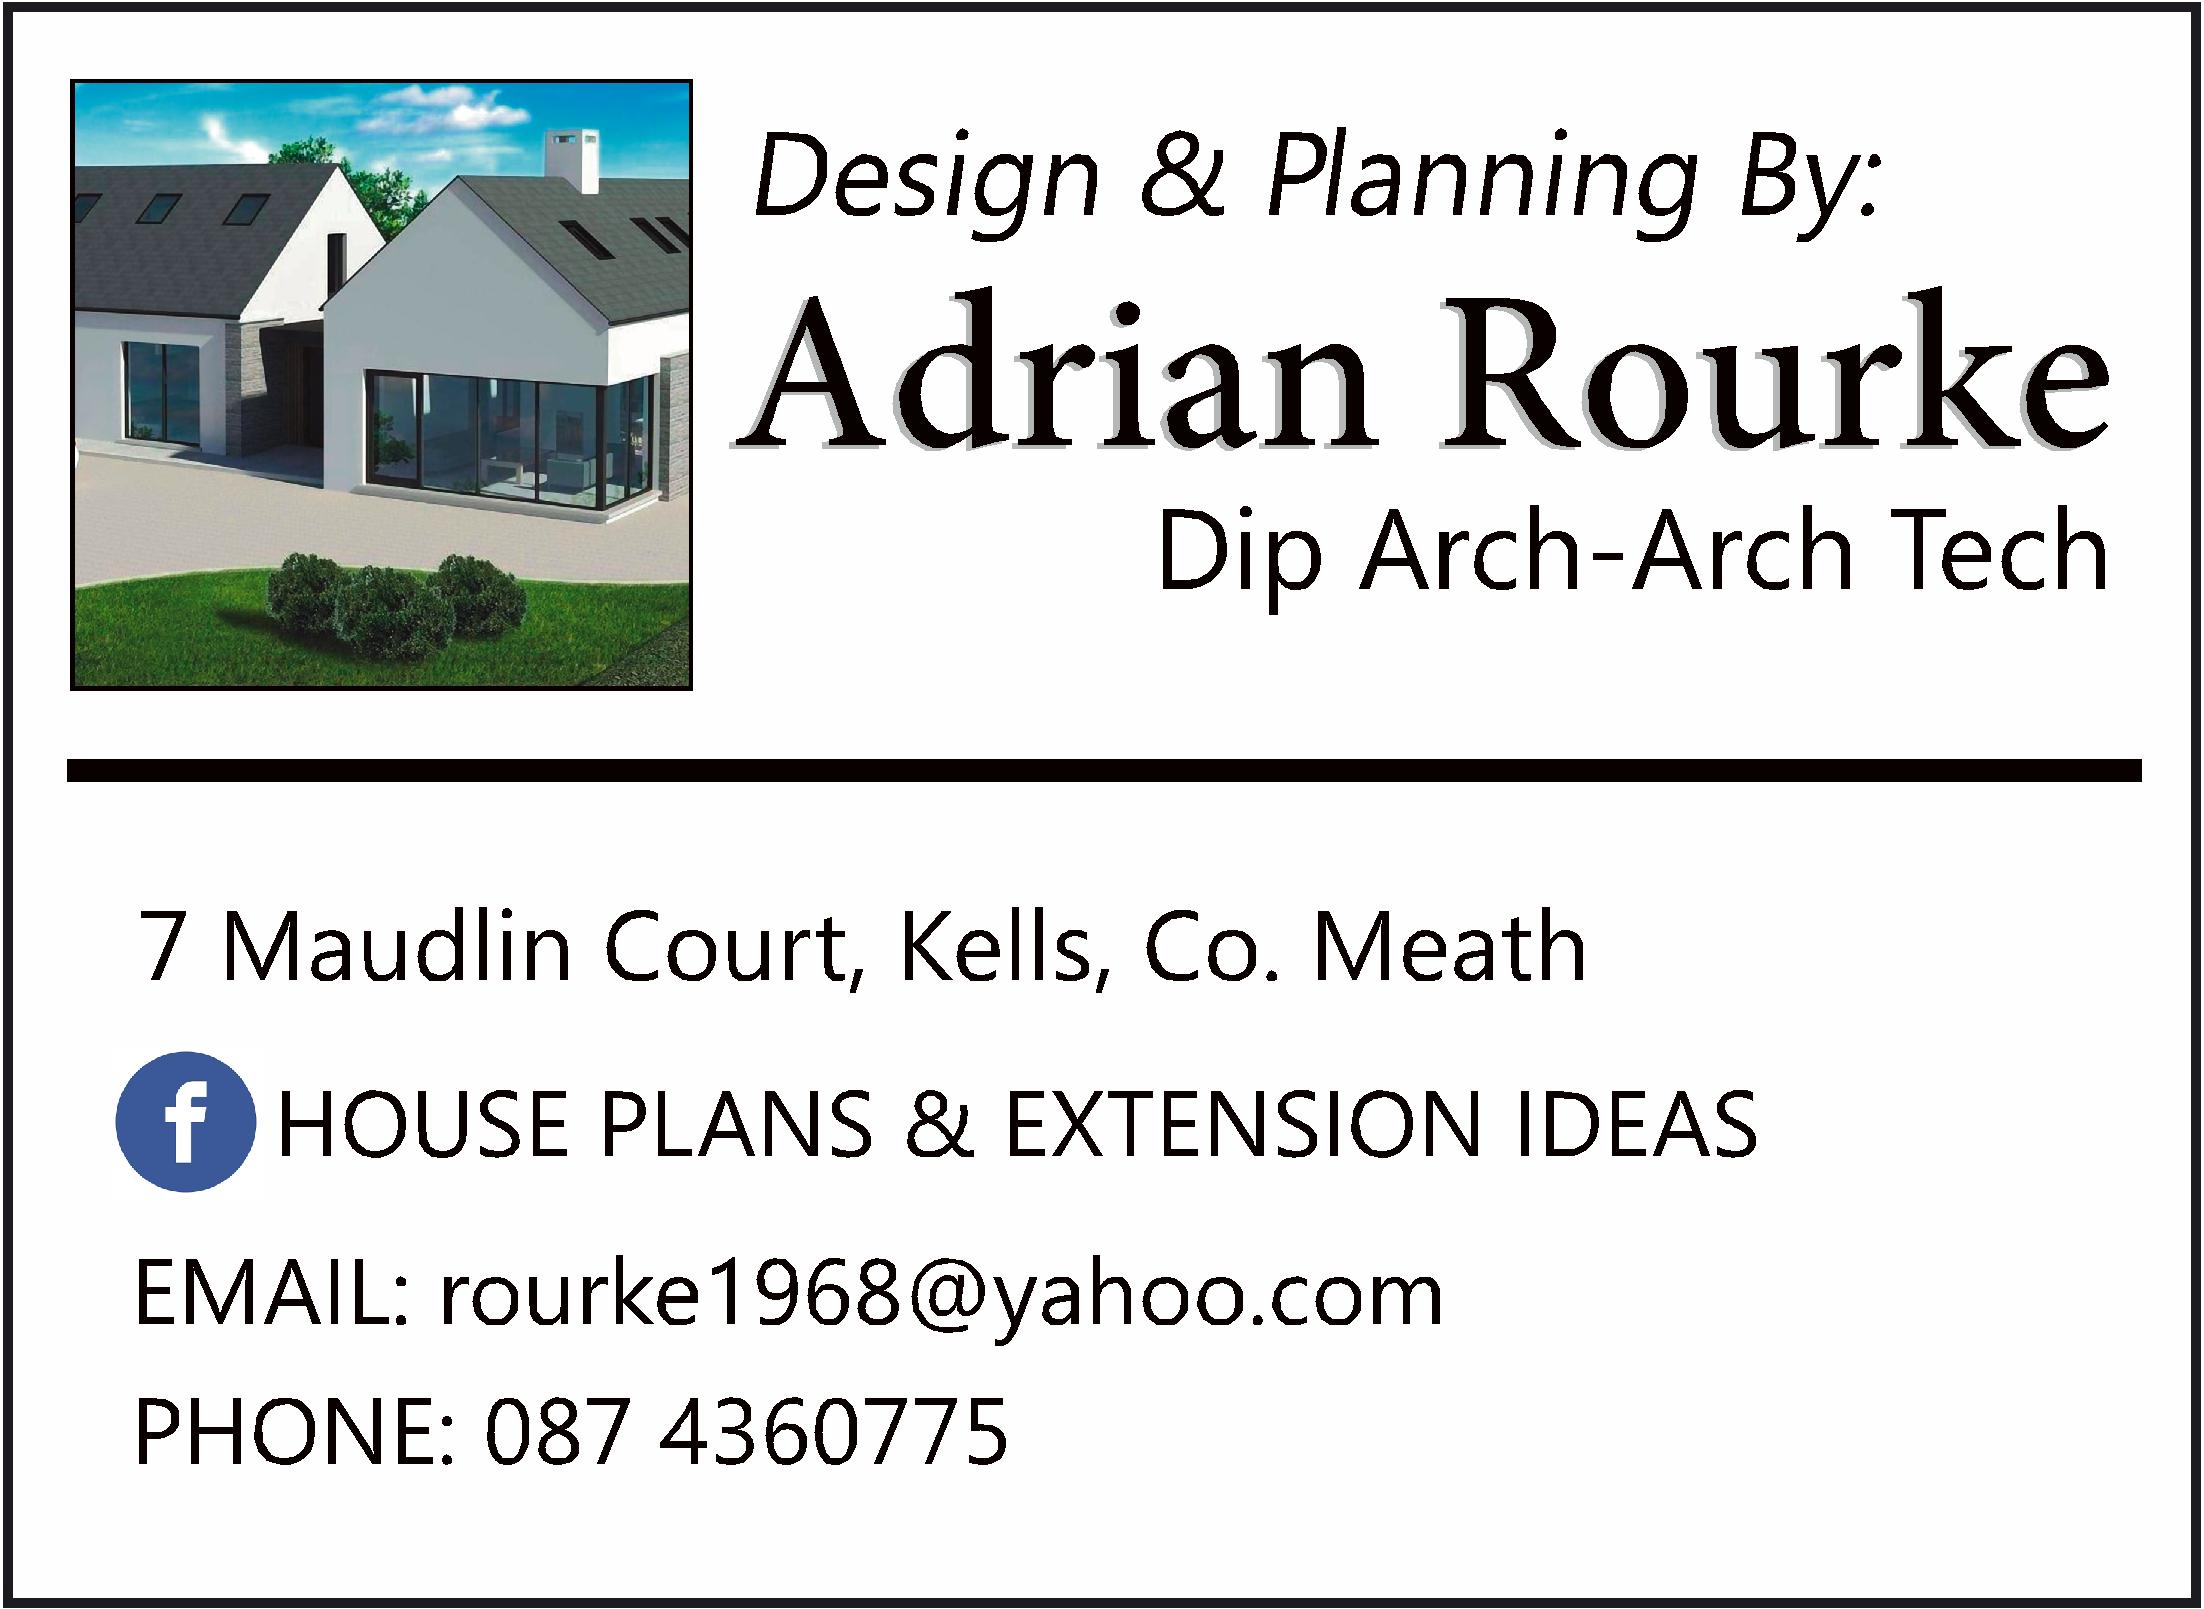 House Plans & Extension Ideas - Cottageology | Irish Cottages & Culture